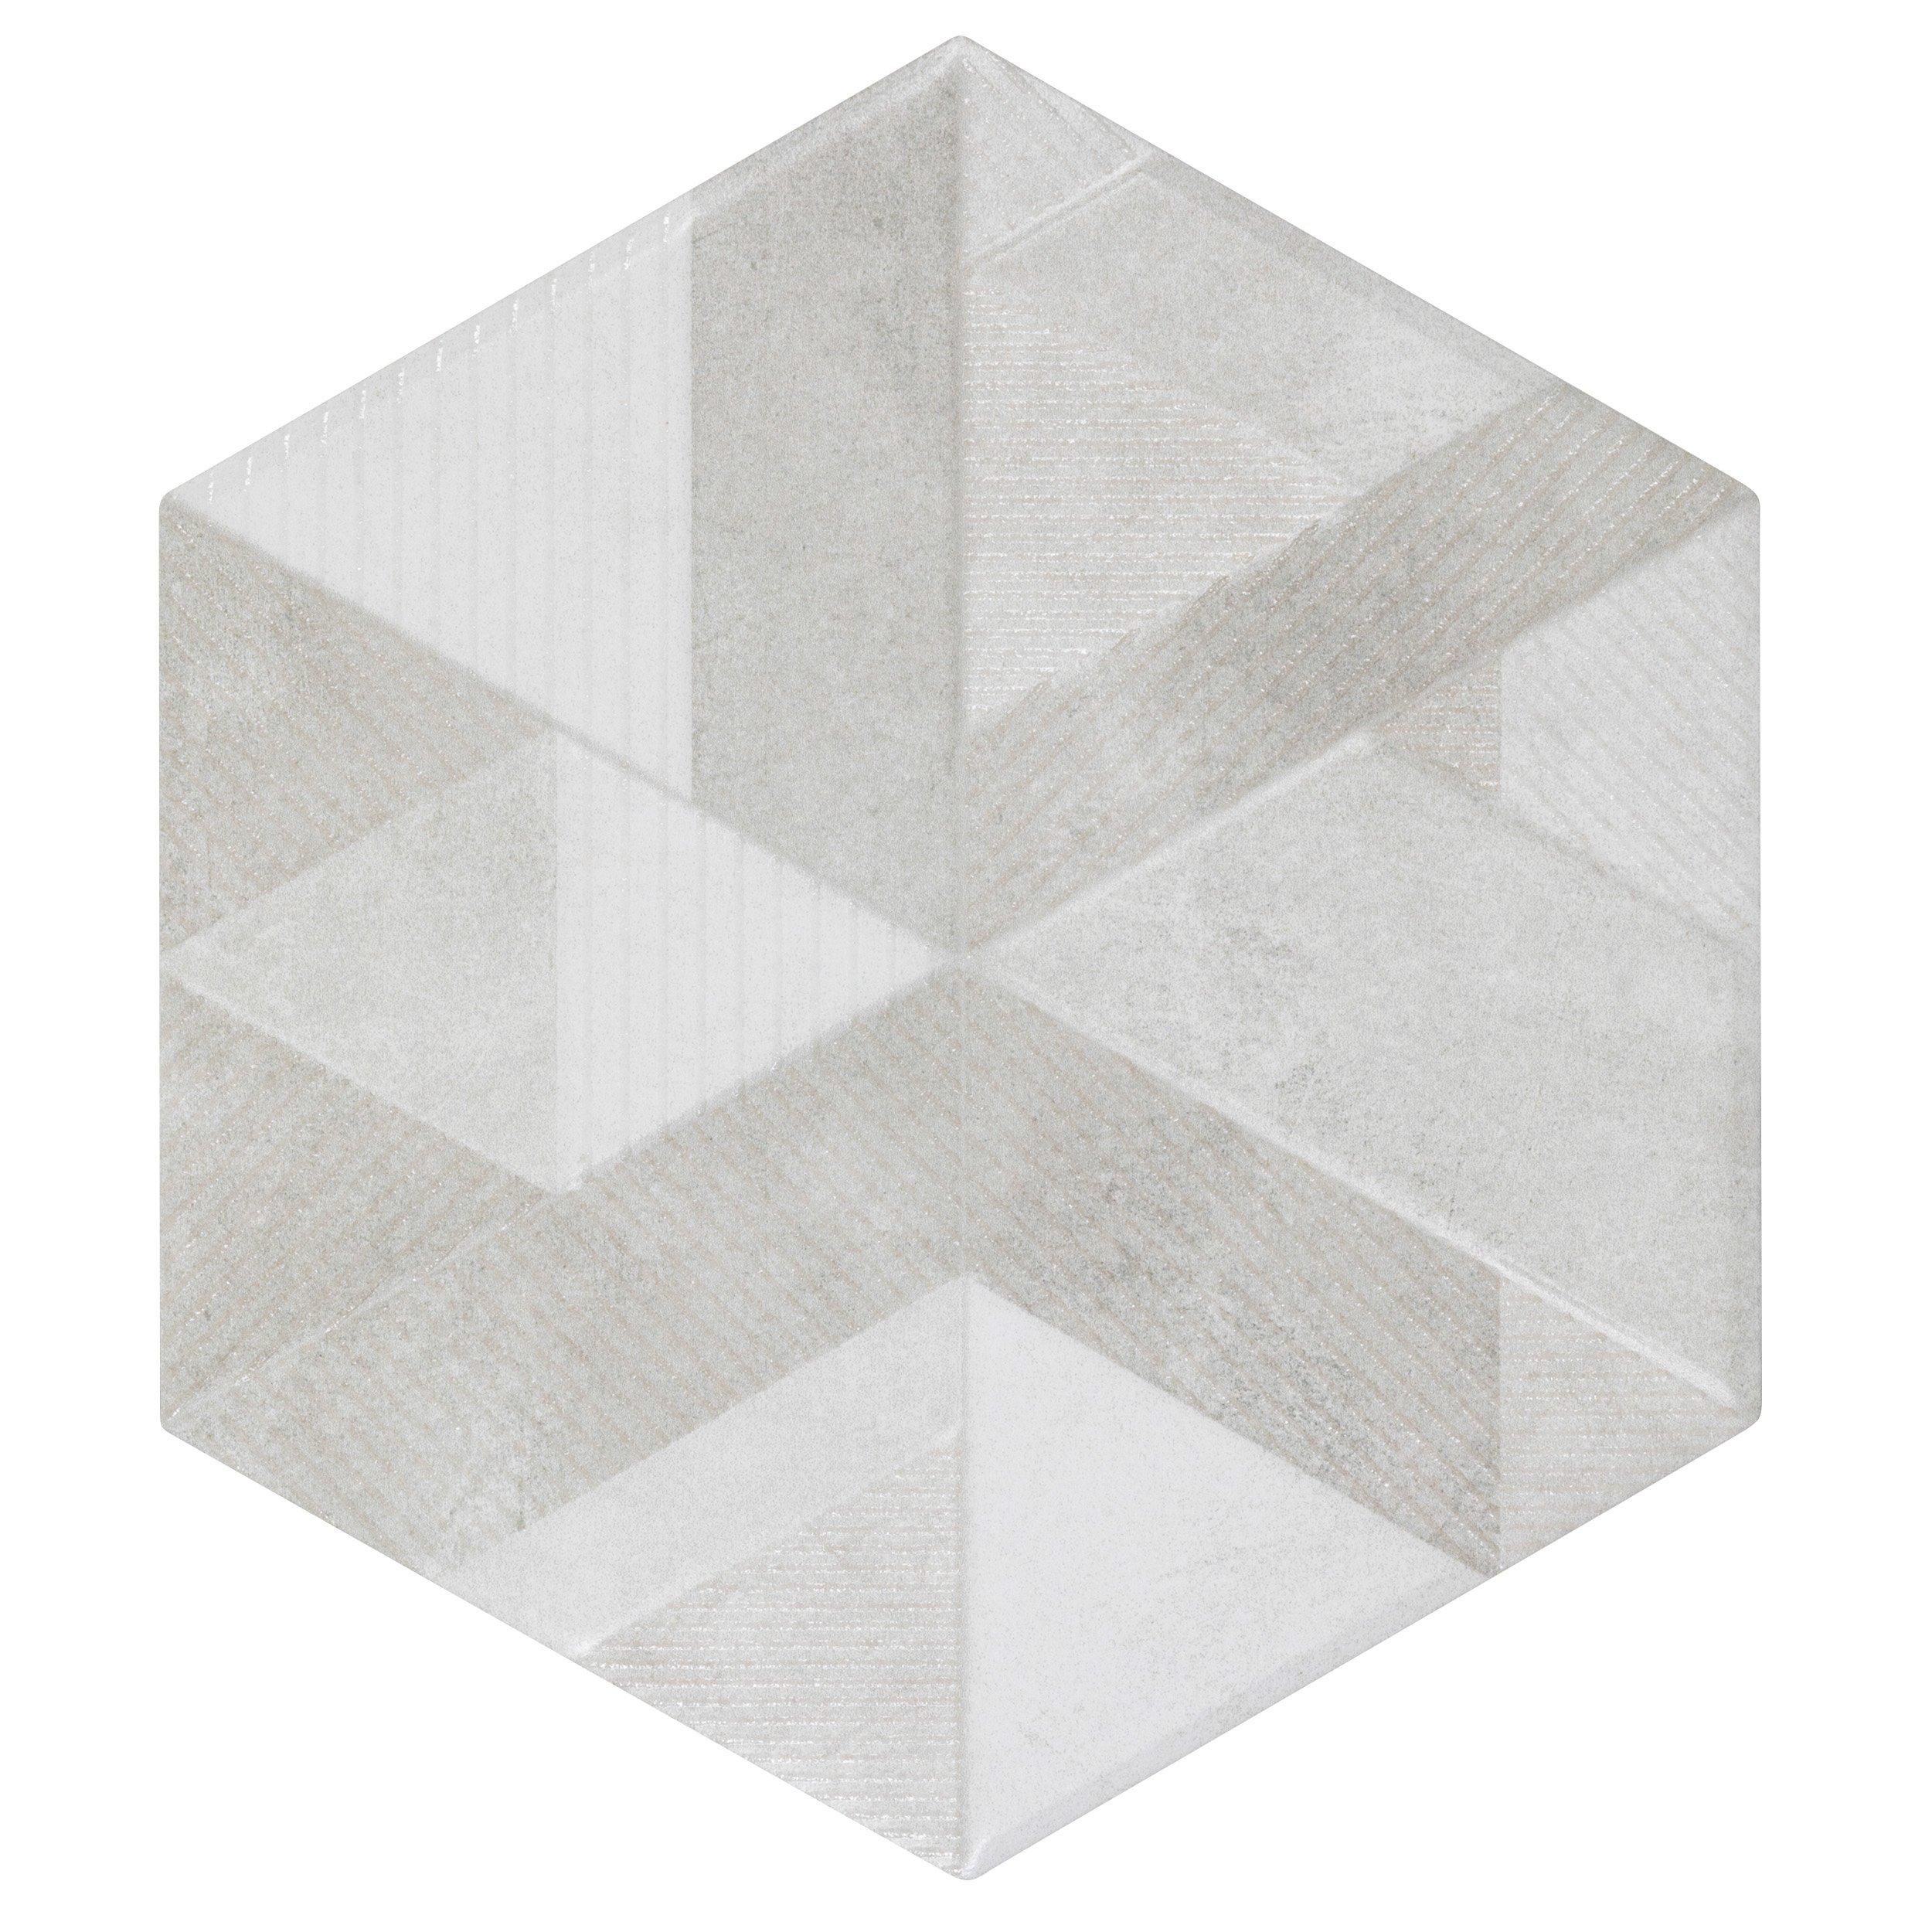 Sedona 10 in. 3D Hexagon Porcelain Tile